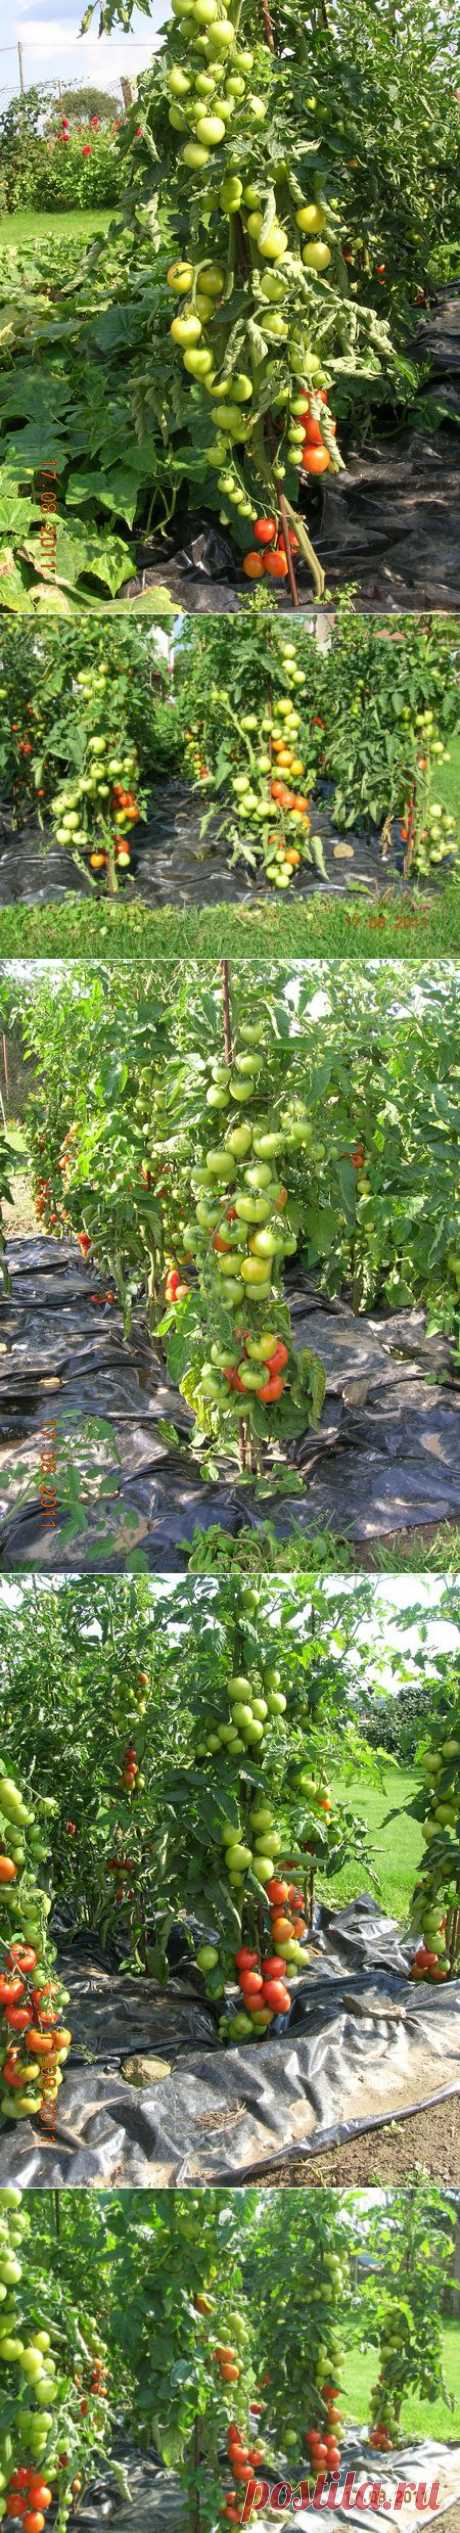 Урожайные помидоры